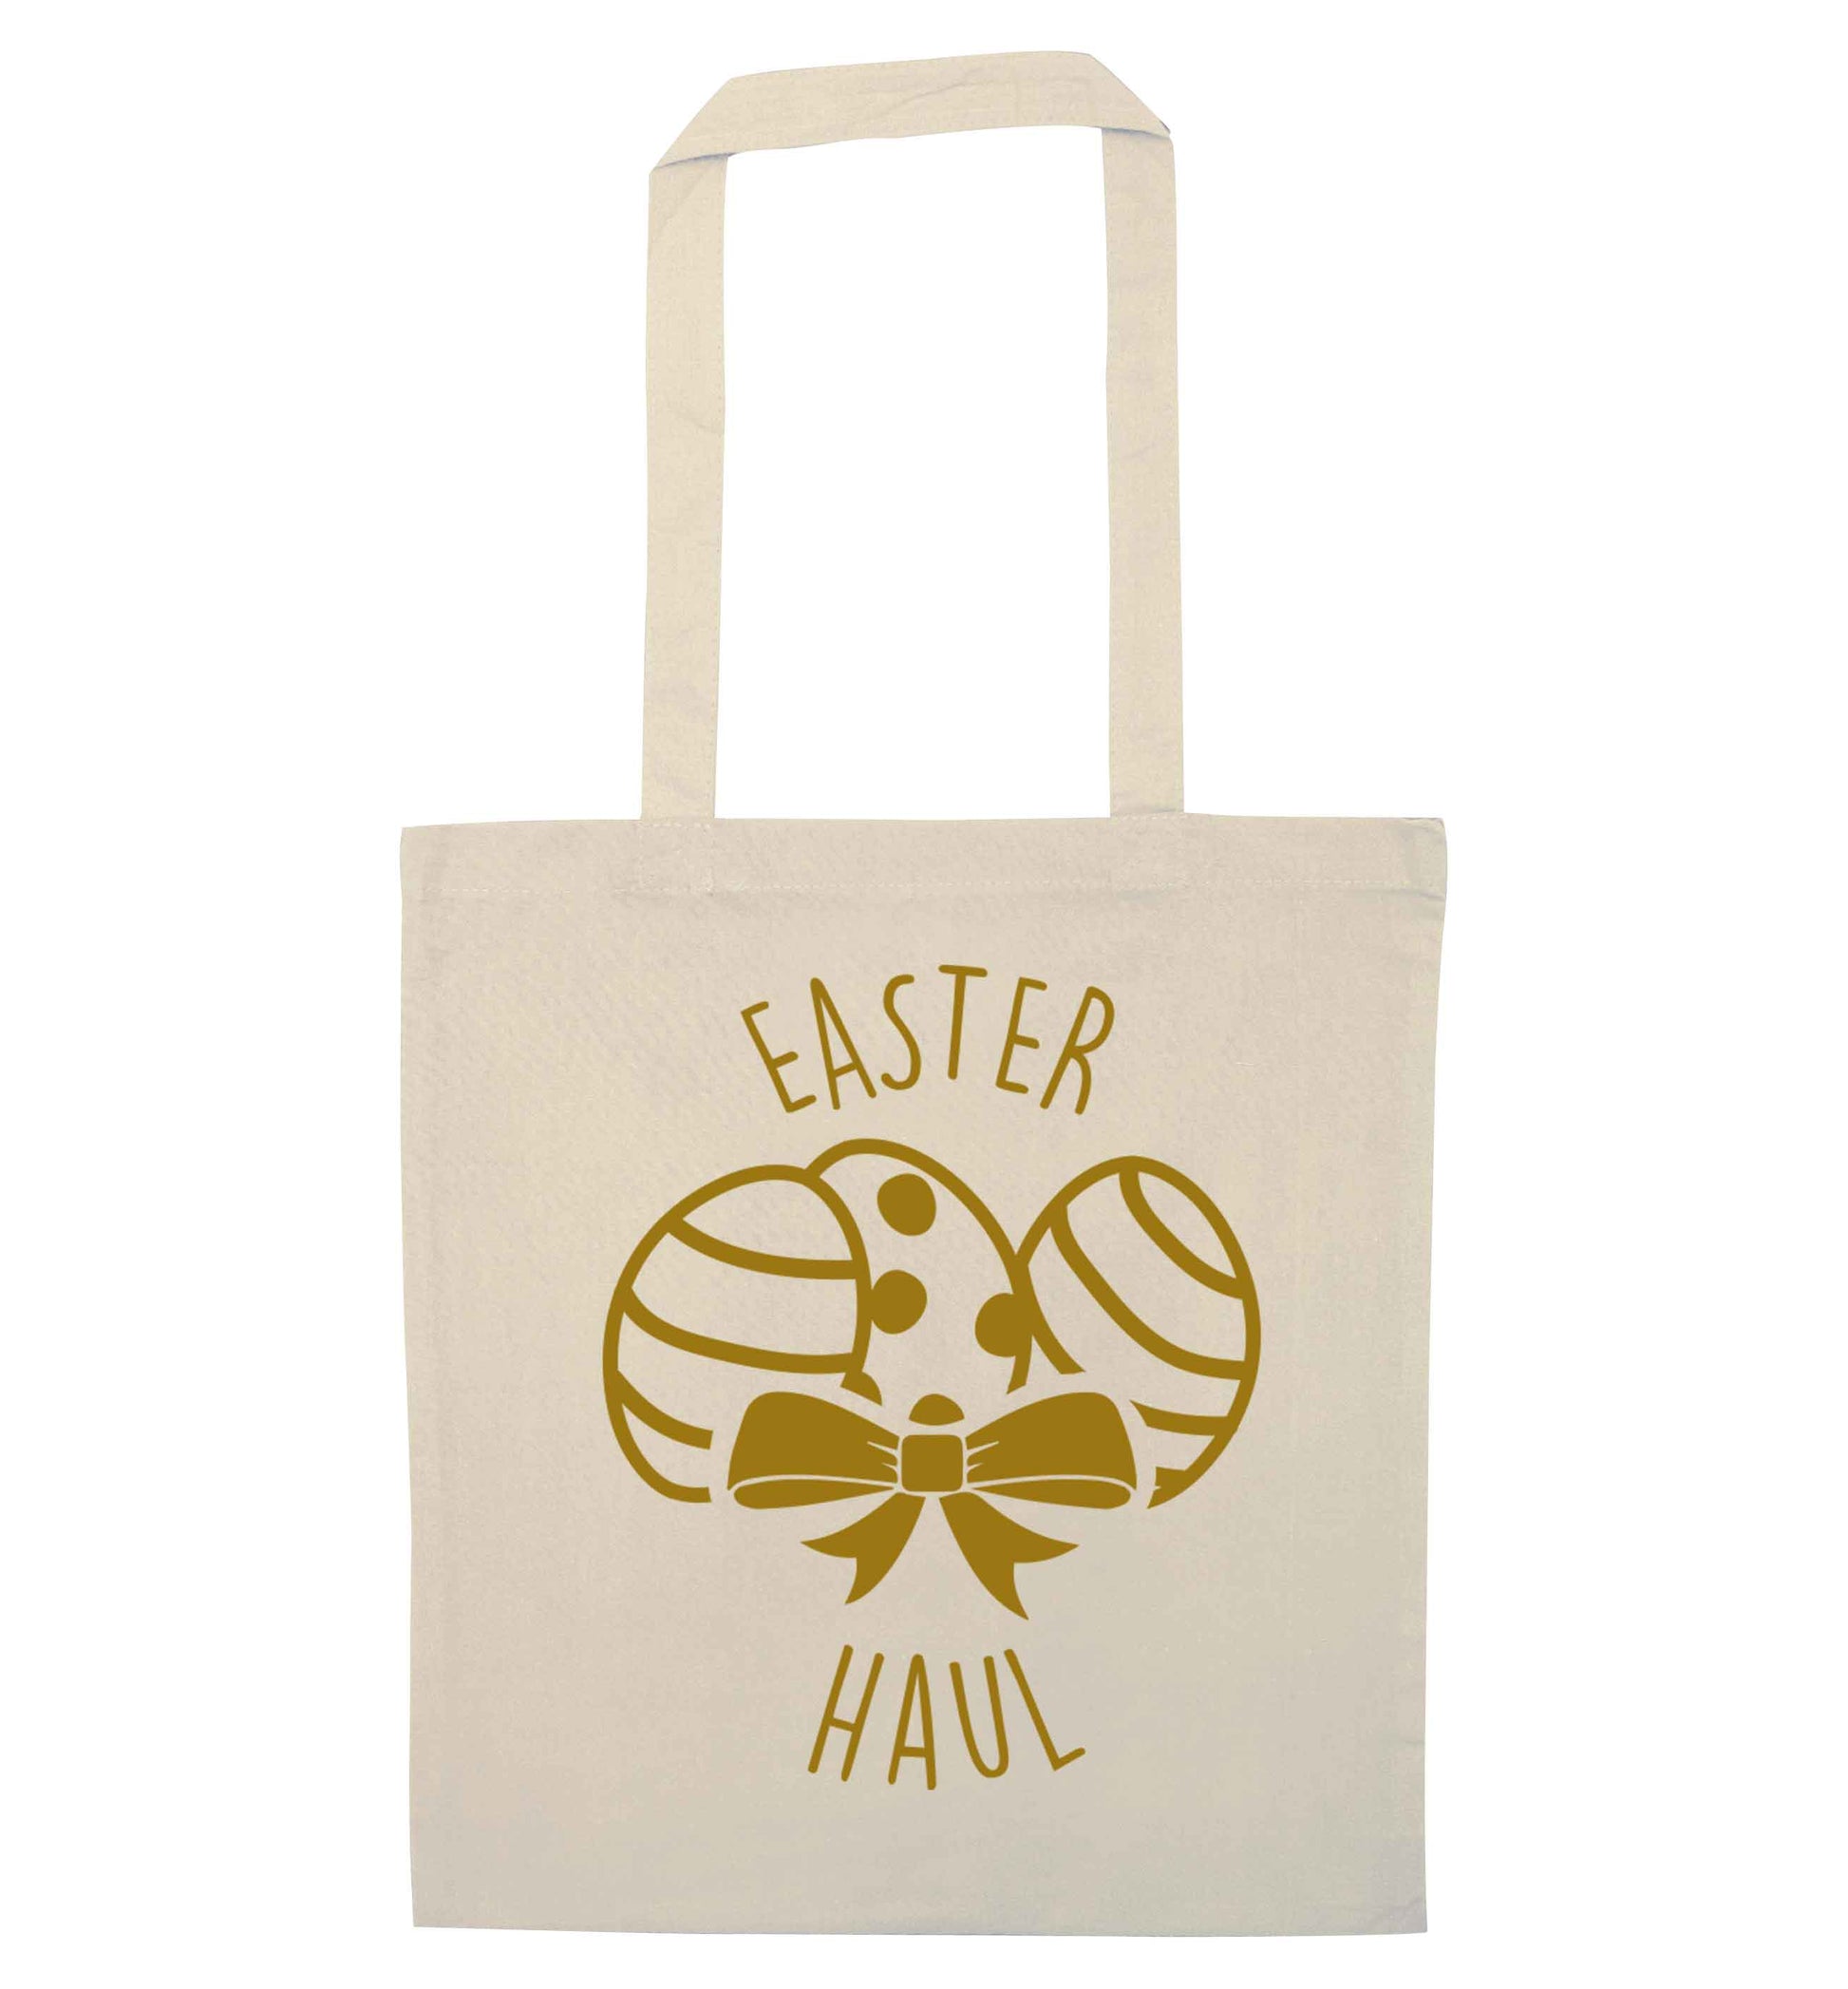 Easter haul natural tote bag